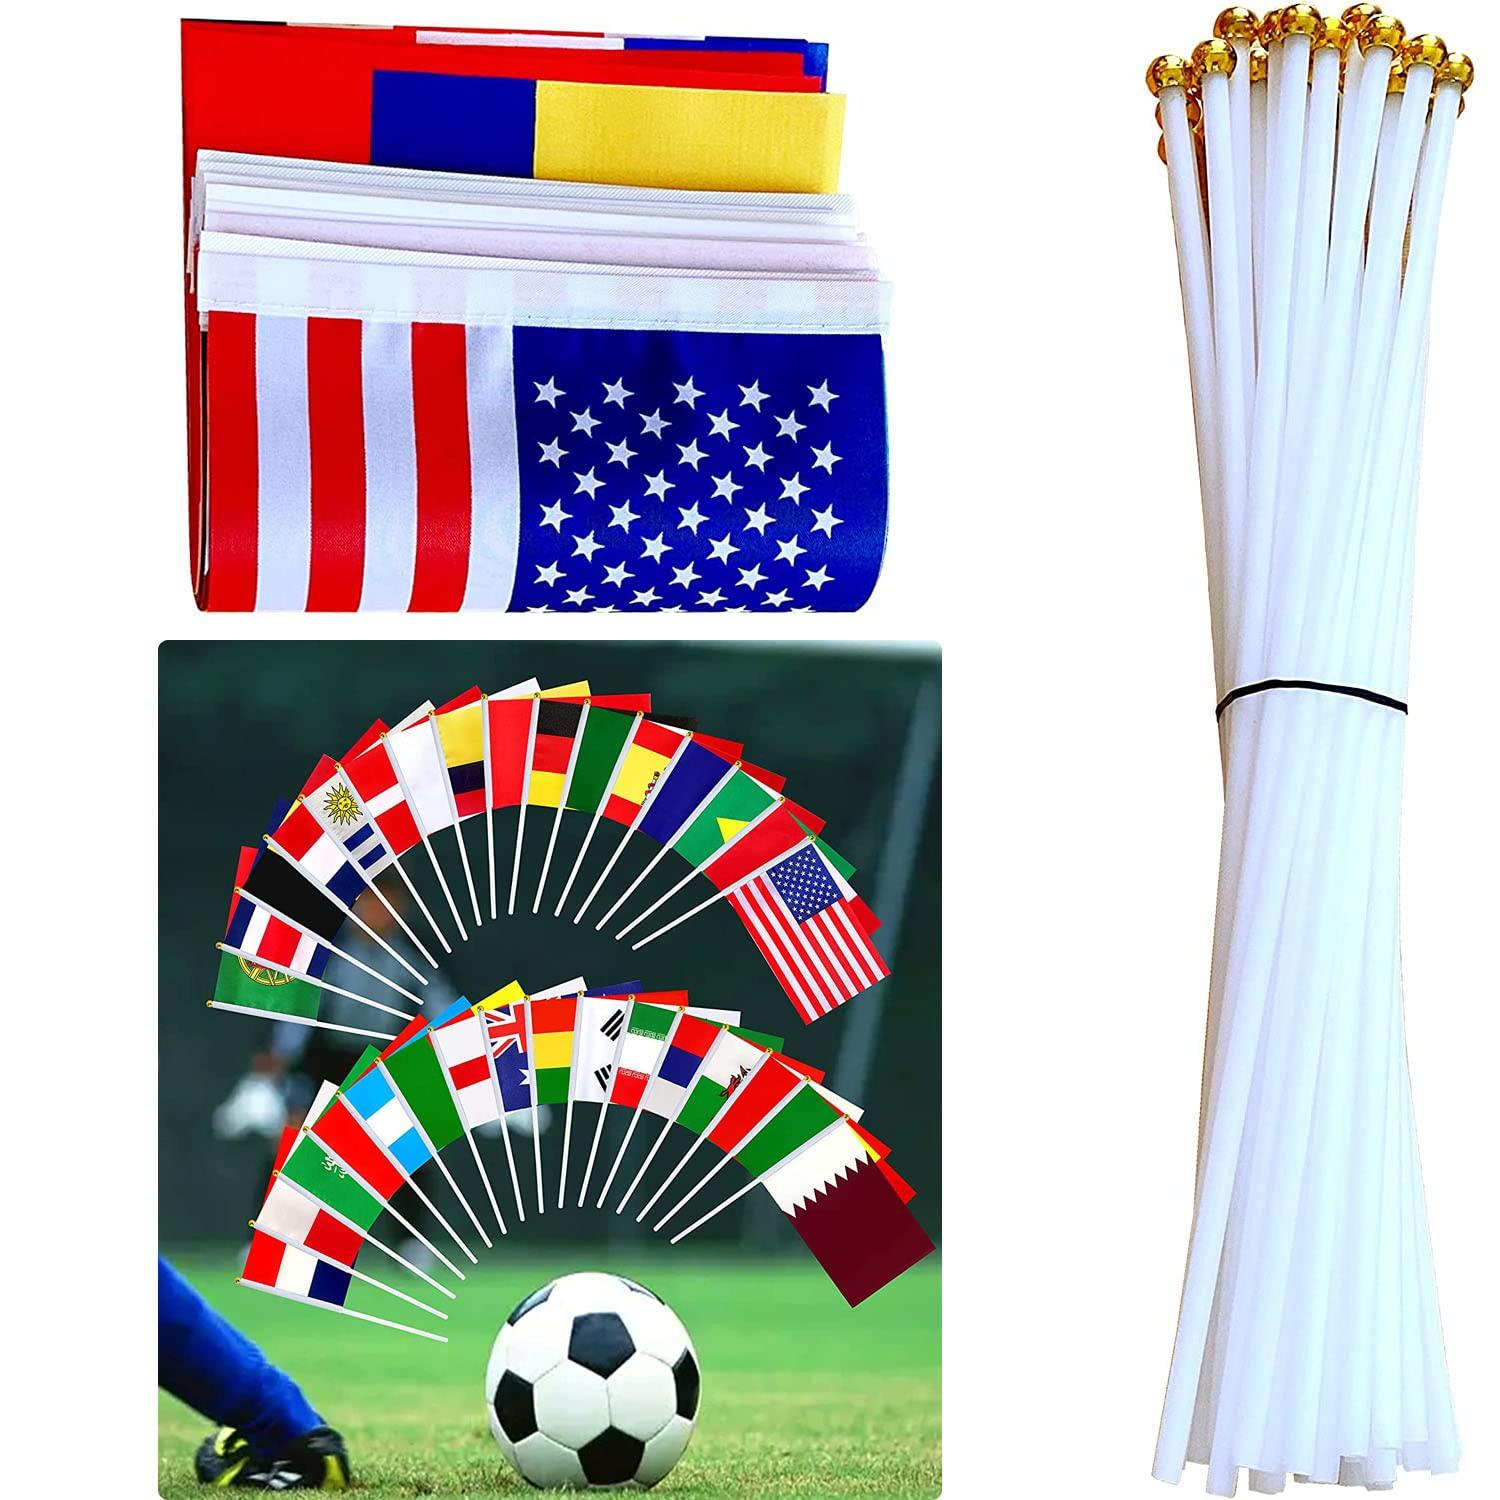 Hình ảnh 32 cờ quốc gia, cờ que quốc tế, cờ que tròn nhỏ, phù hợp với mọi loại sự kiện thể thao, cúp thế giới, olympic, cờ quốc gia.